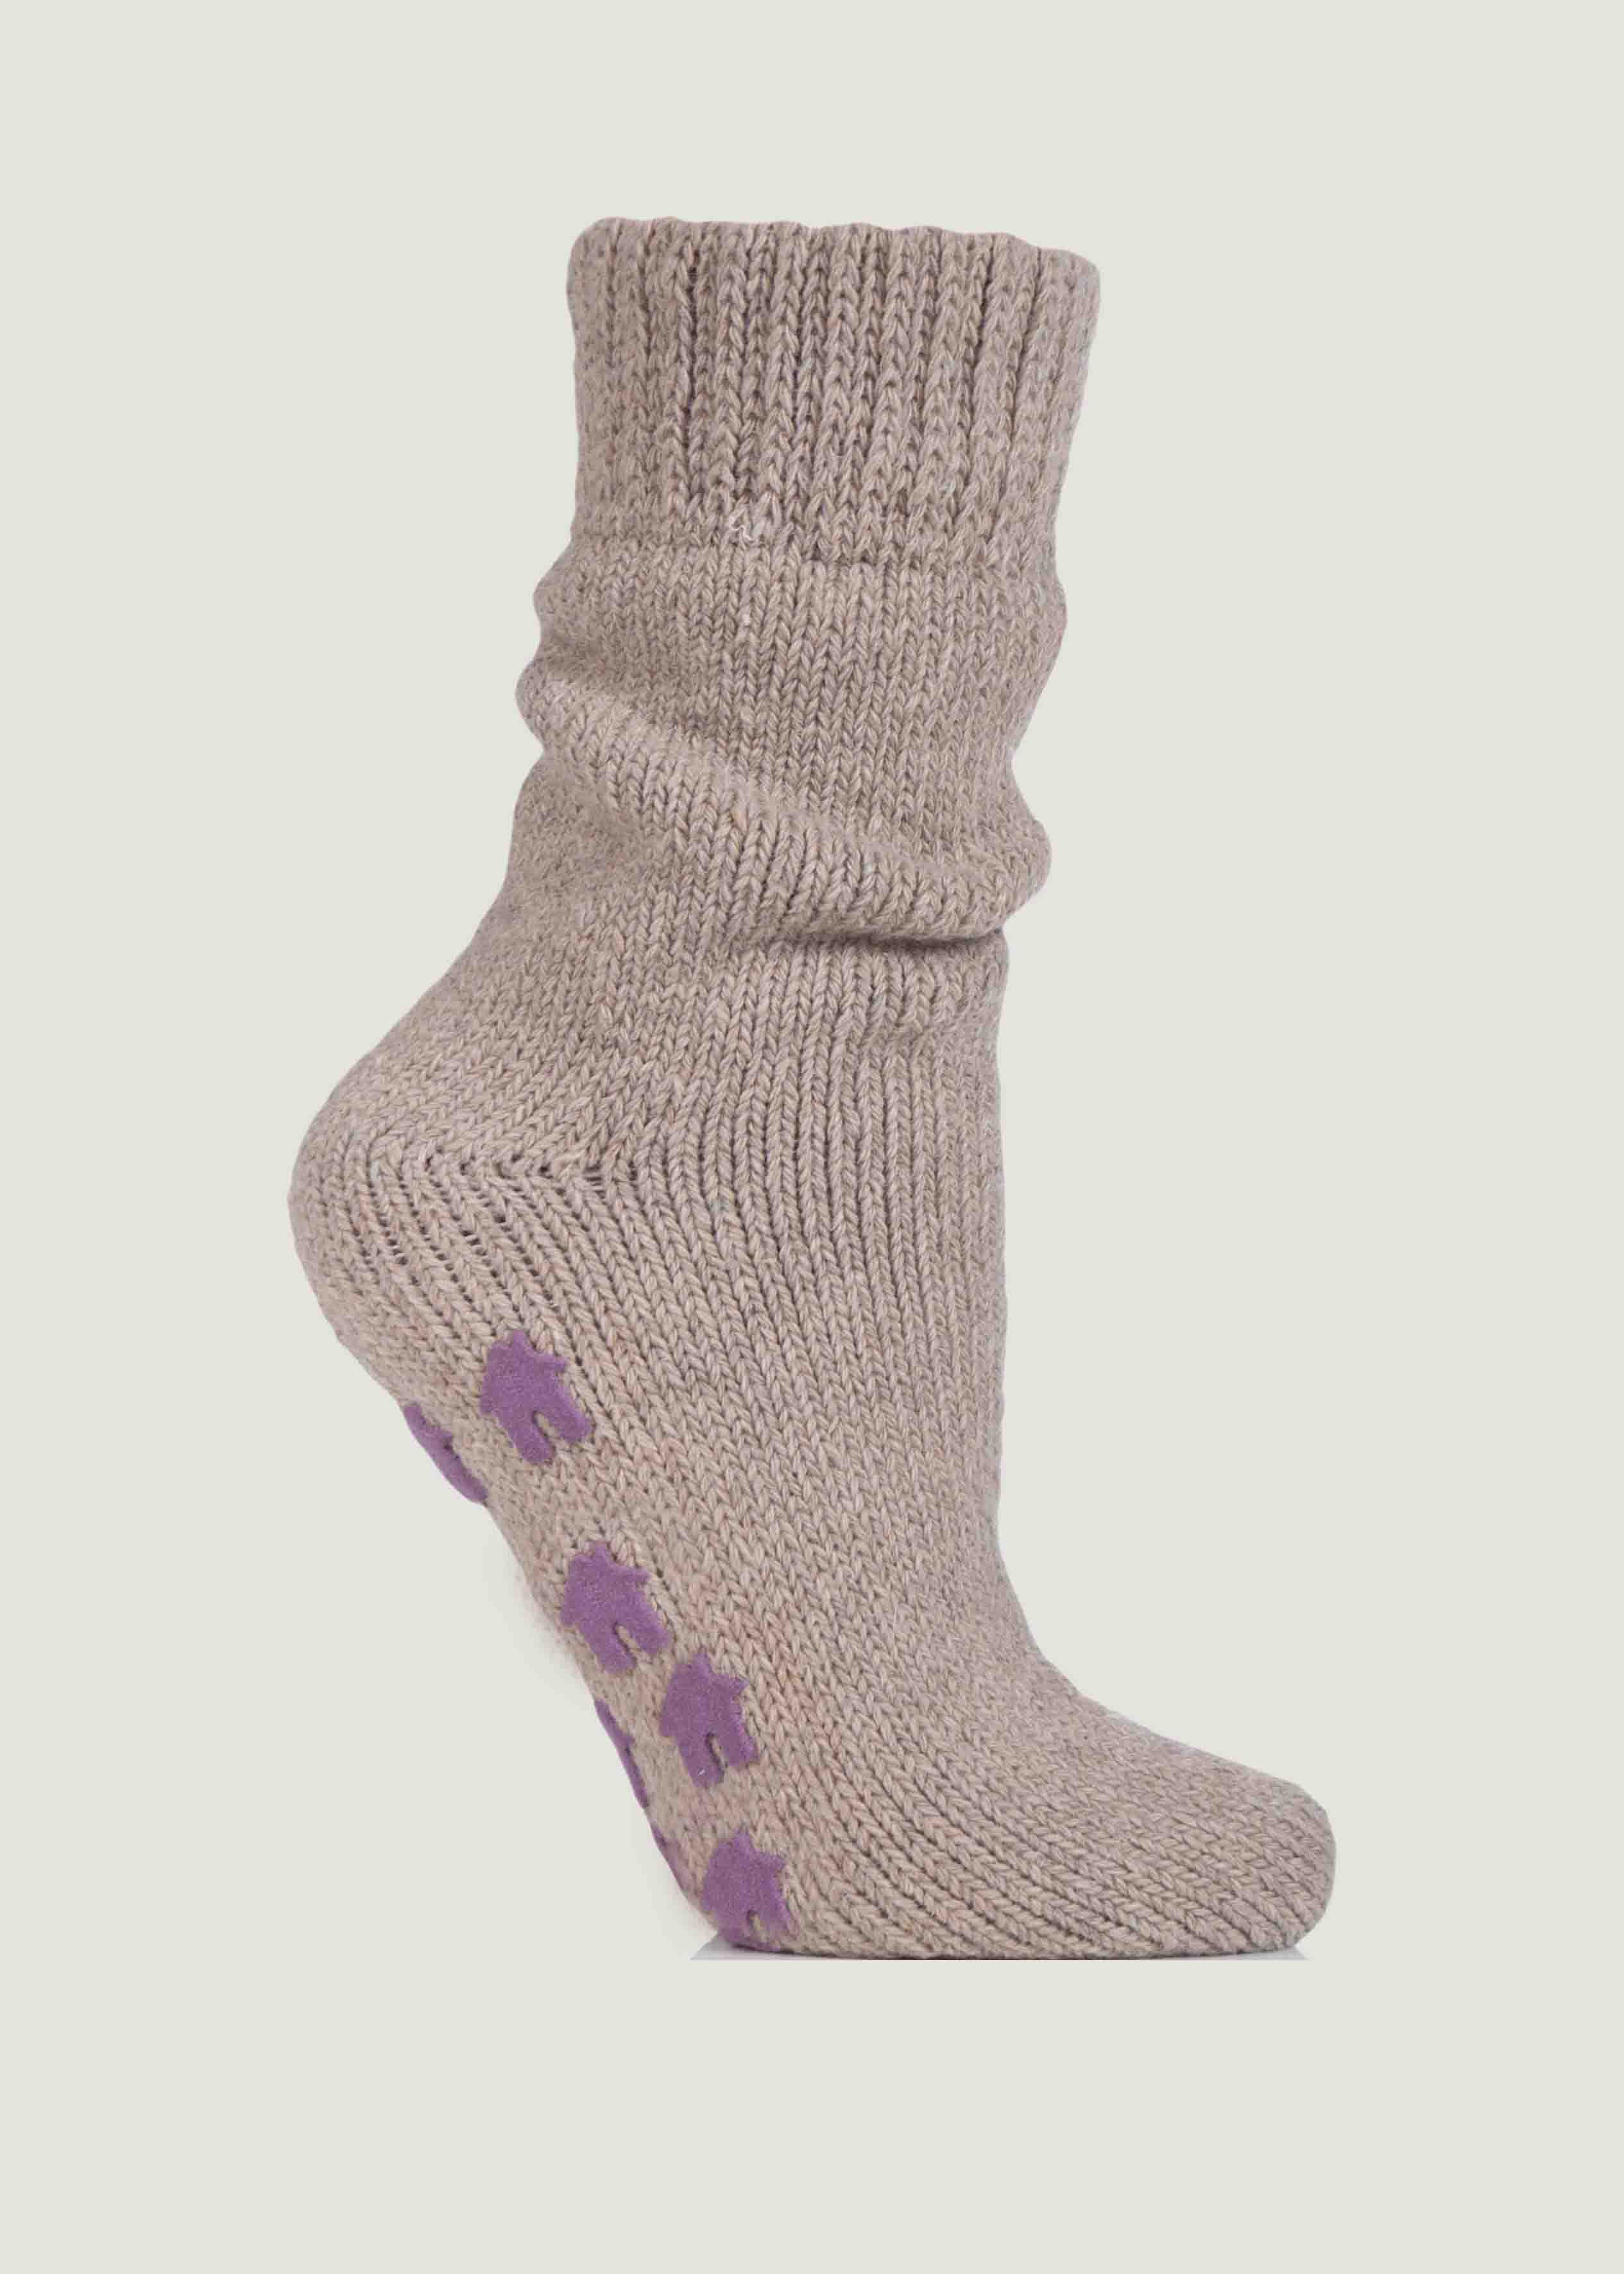 Ava Non-Slip Slipper Socks, Oatmeasl, Grip Sole, Bed Socks, Womens Socks